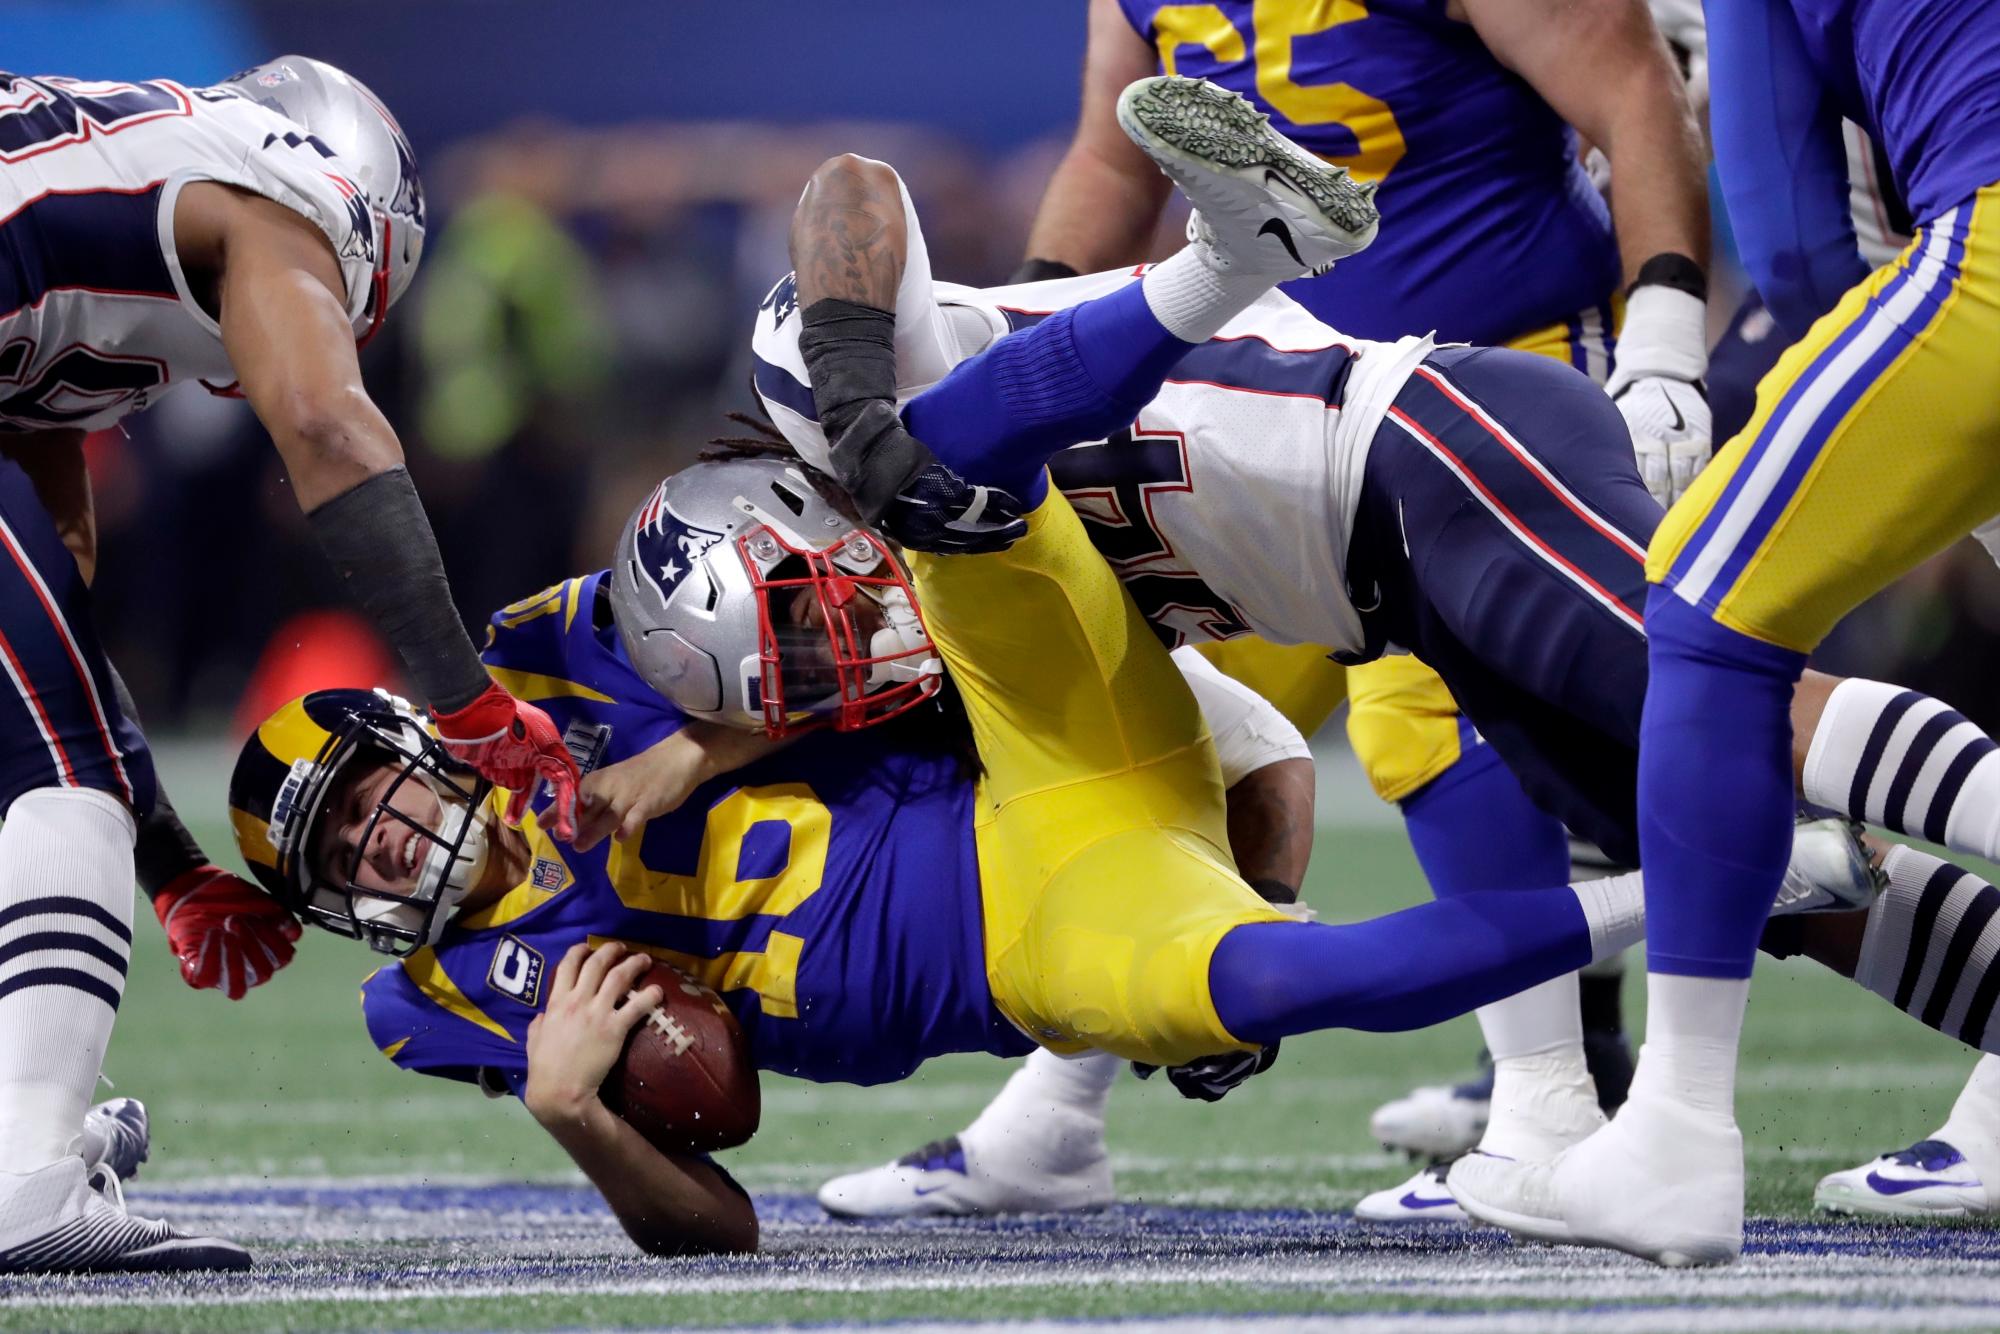 El equipo de los New England Patriots ‘Dont’a Hightower, líder, capta a los Angeles Rams’ Jared Goff (16) durante la primera mitad del partido de fútbol Super Bowl 53 de la NFL el domingo 3 de febrero de 2019, en Atlanta.